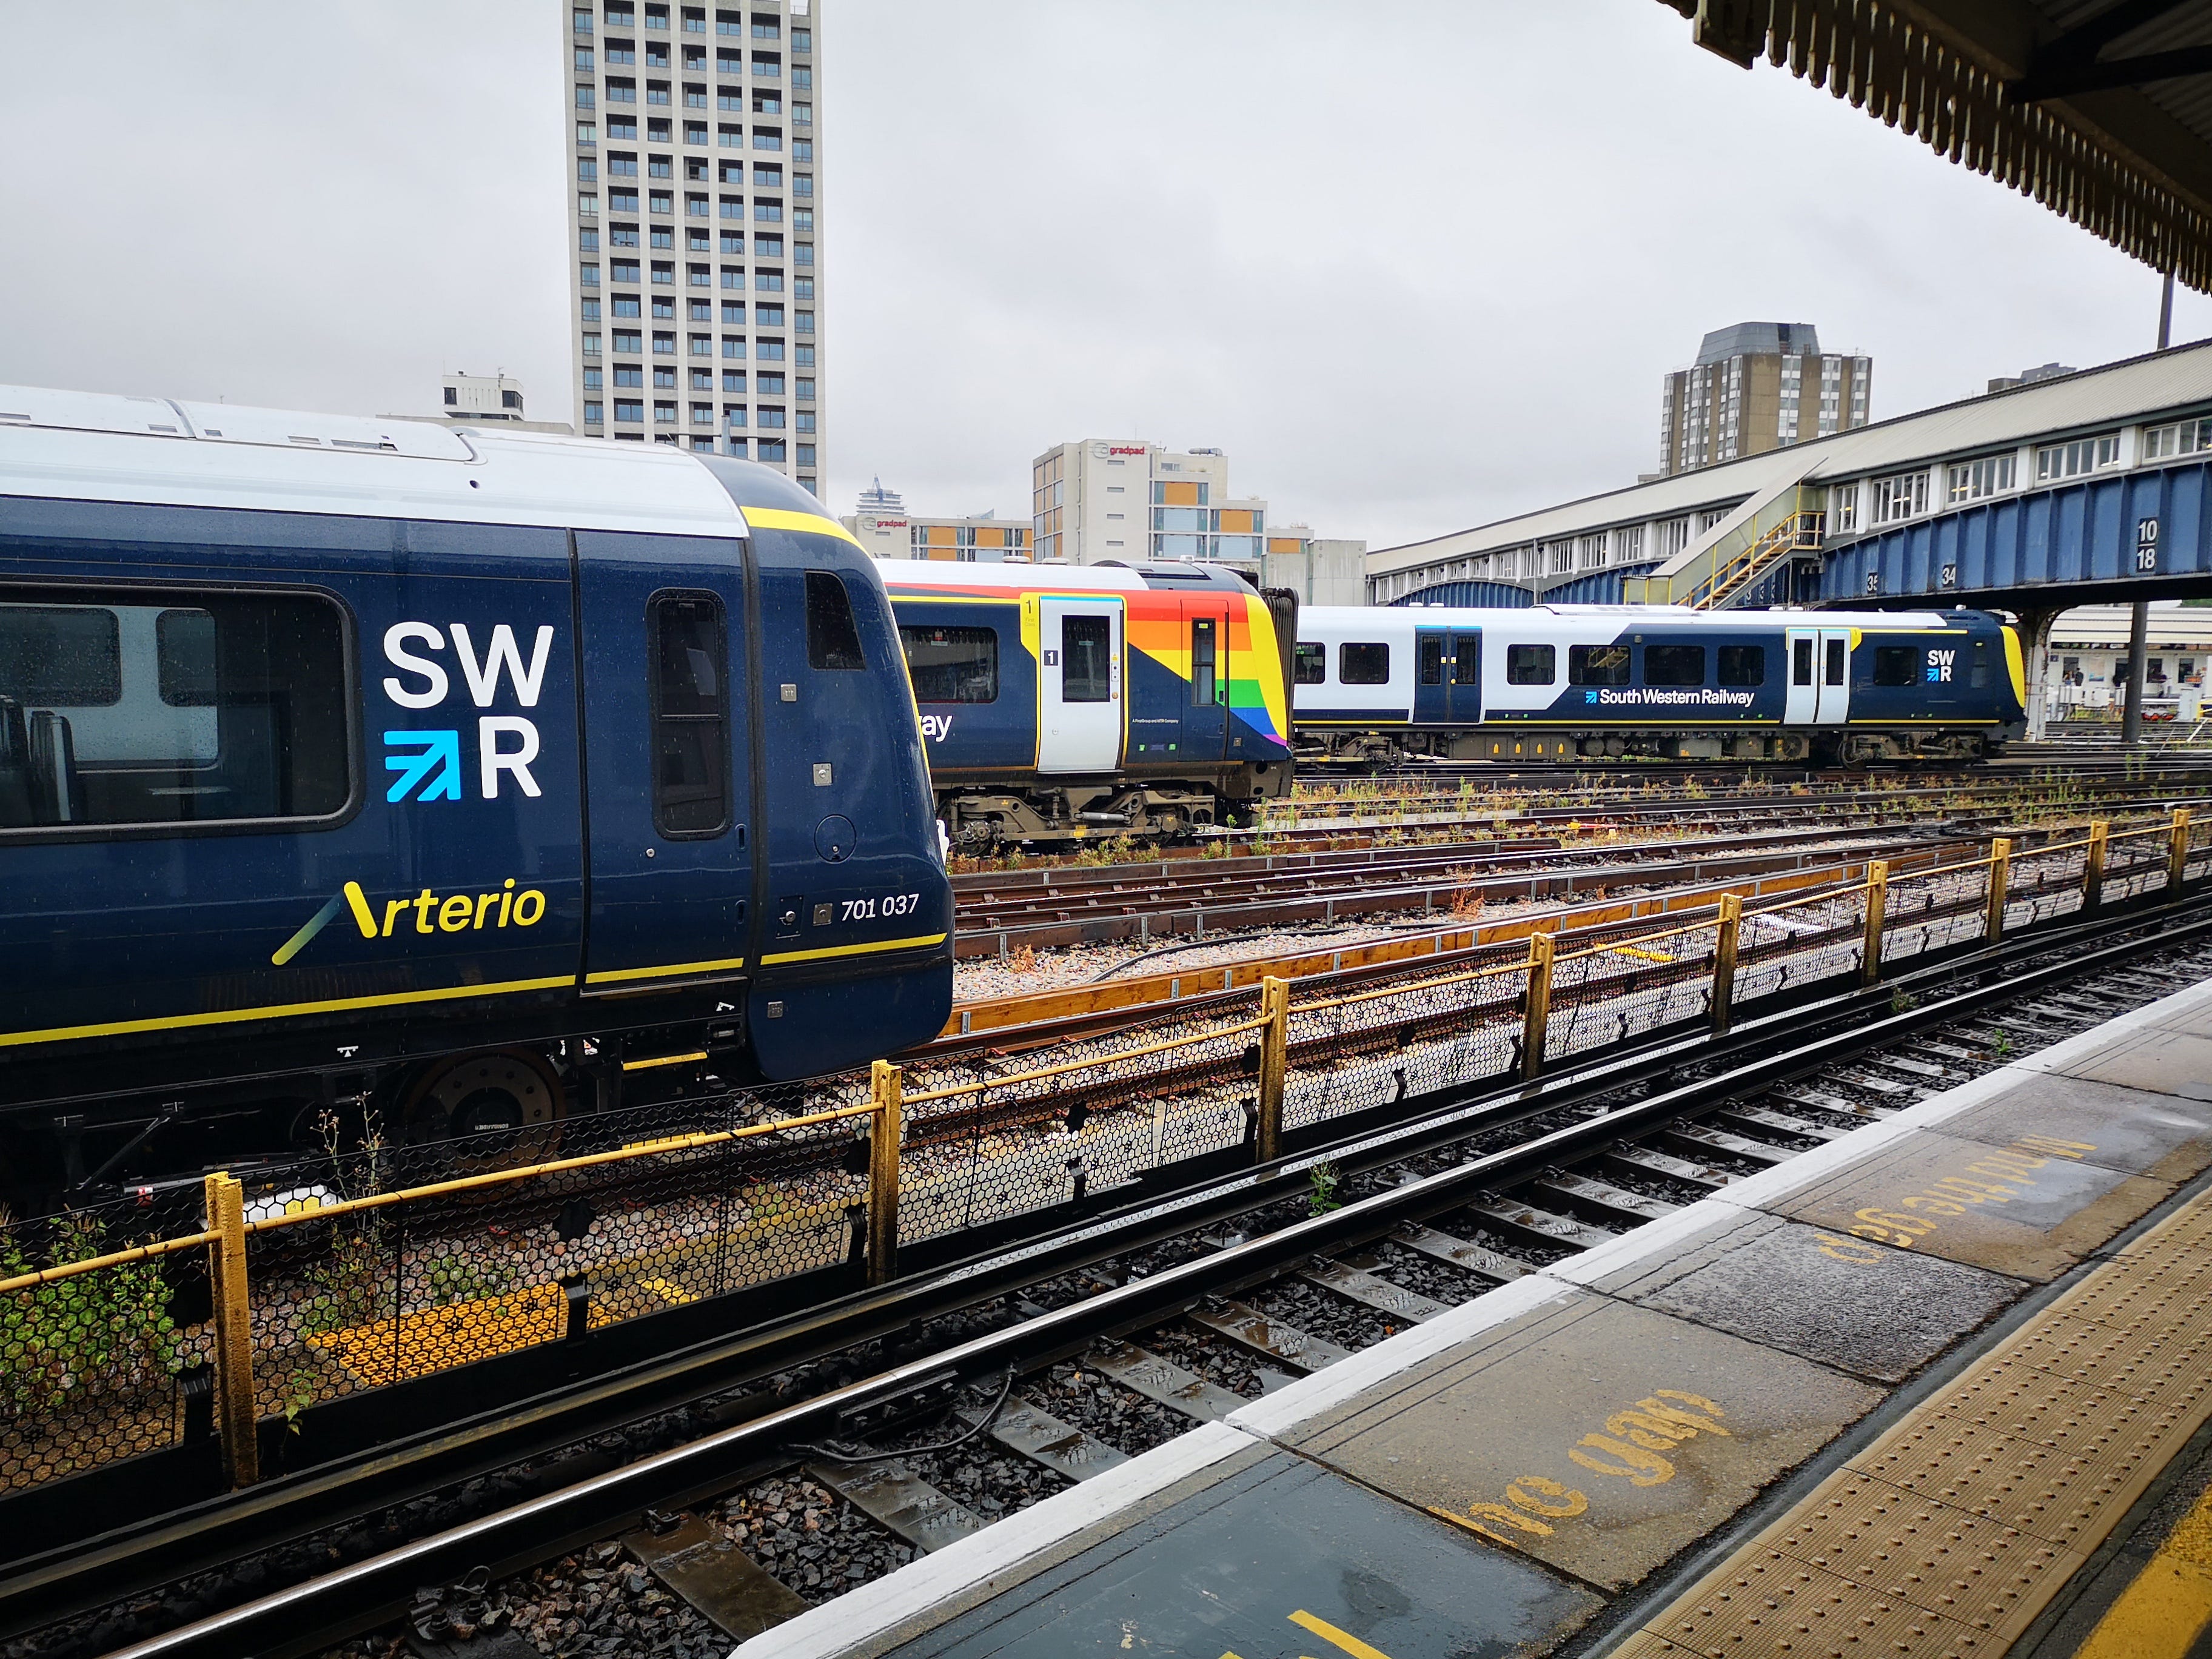 SWR Train in sidings